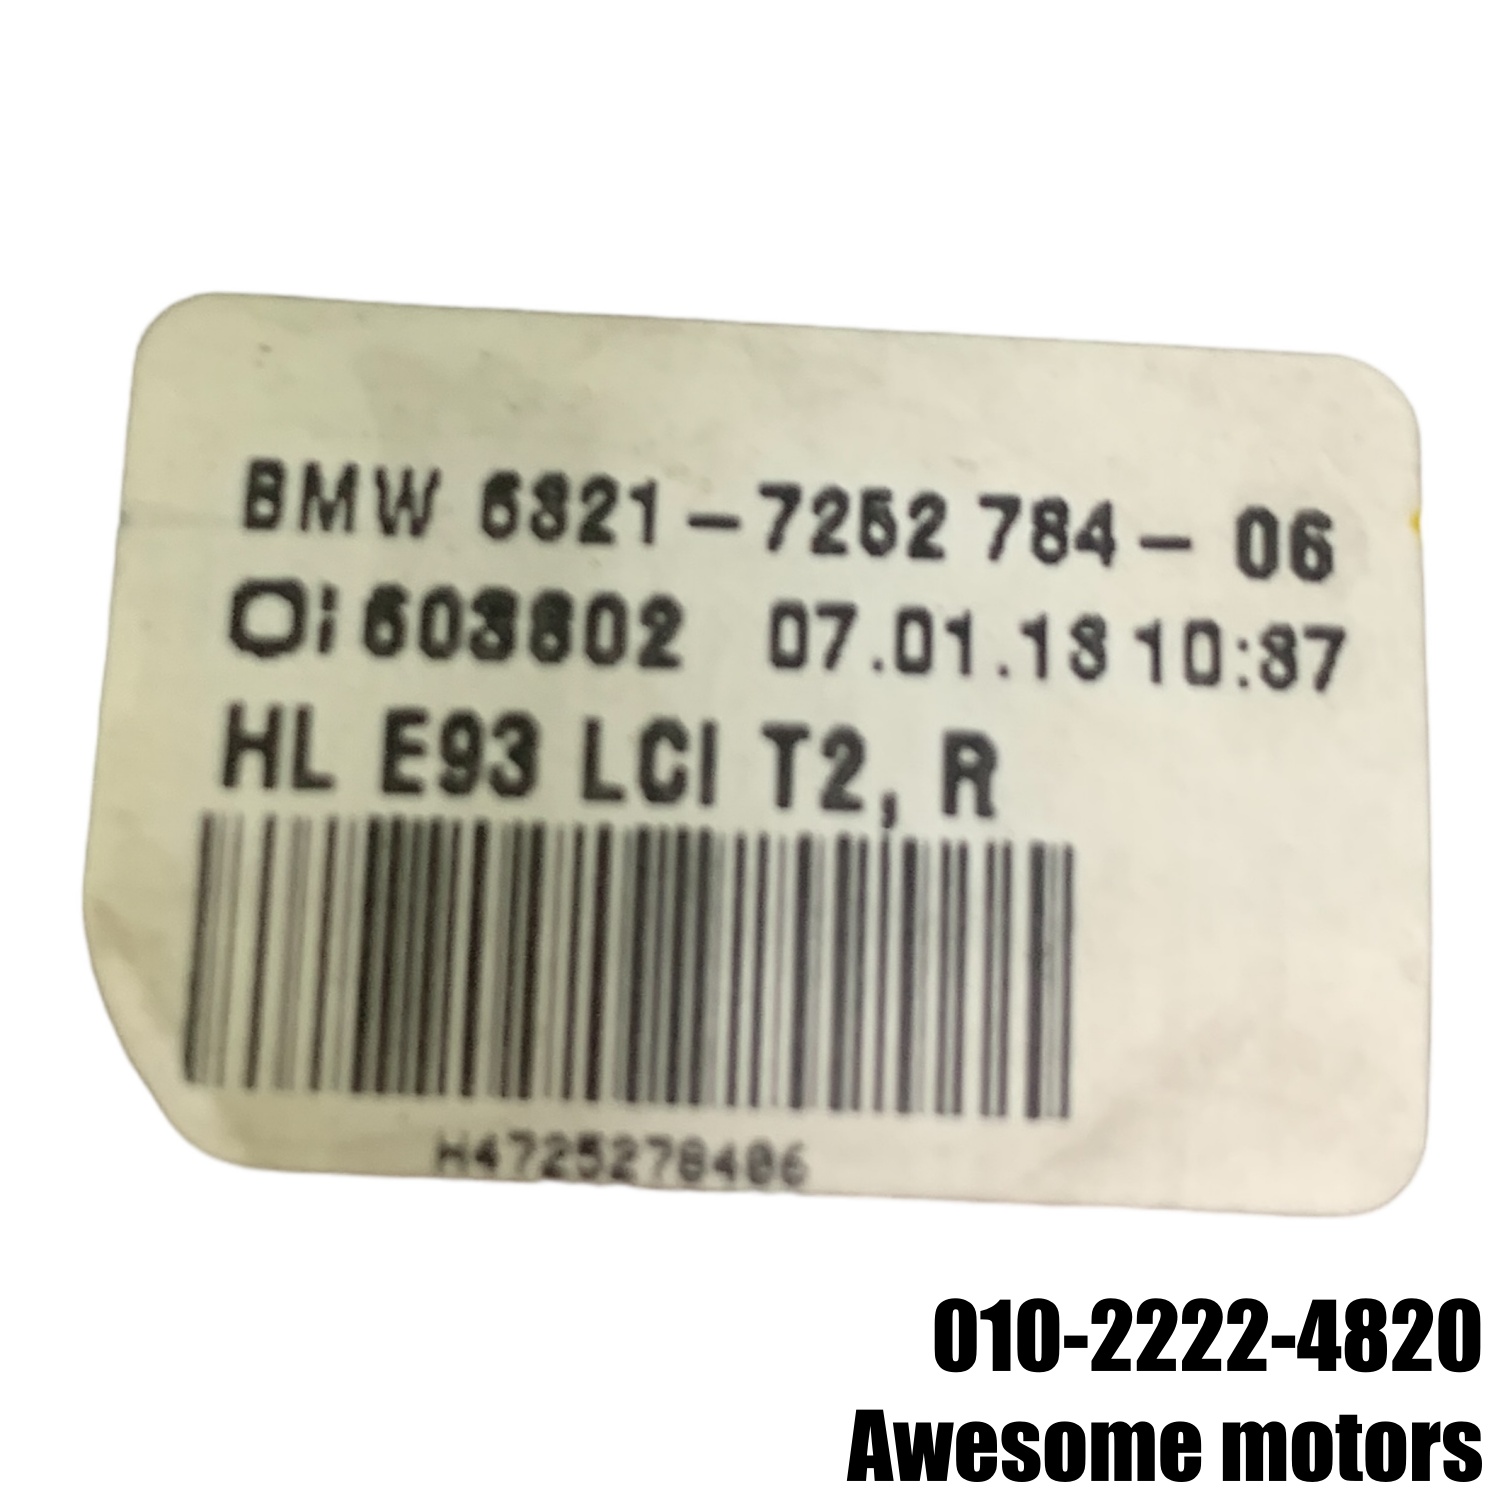 BMW M3 컨버터블 E93 조수석 트렁크 후미등 7252784